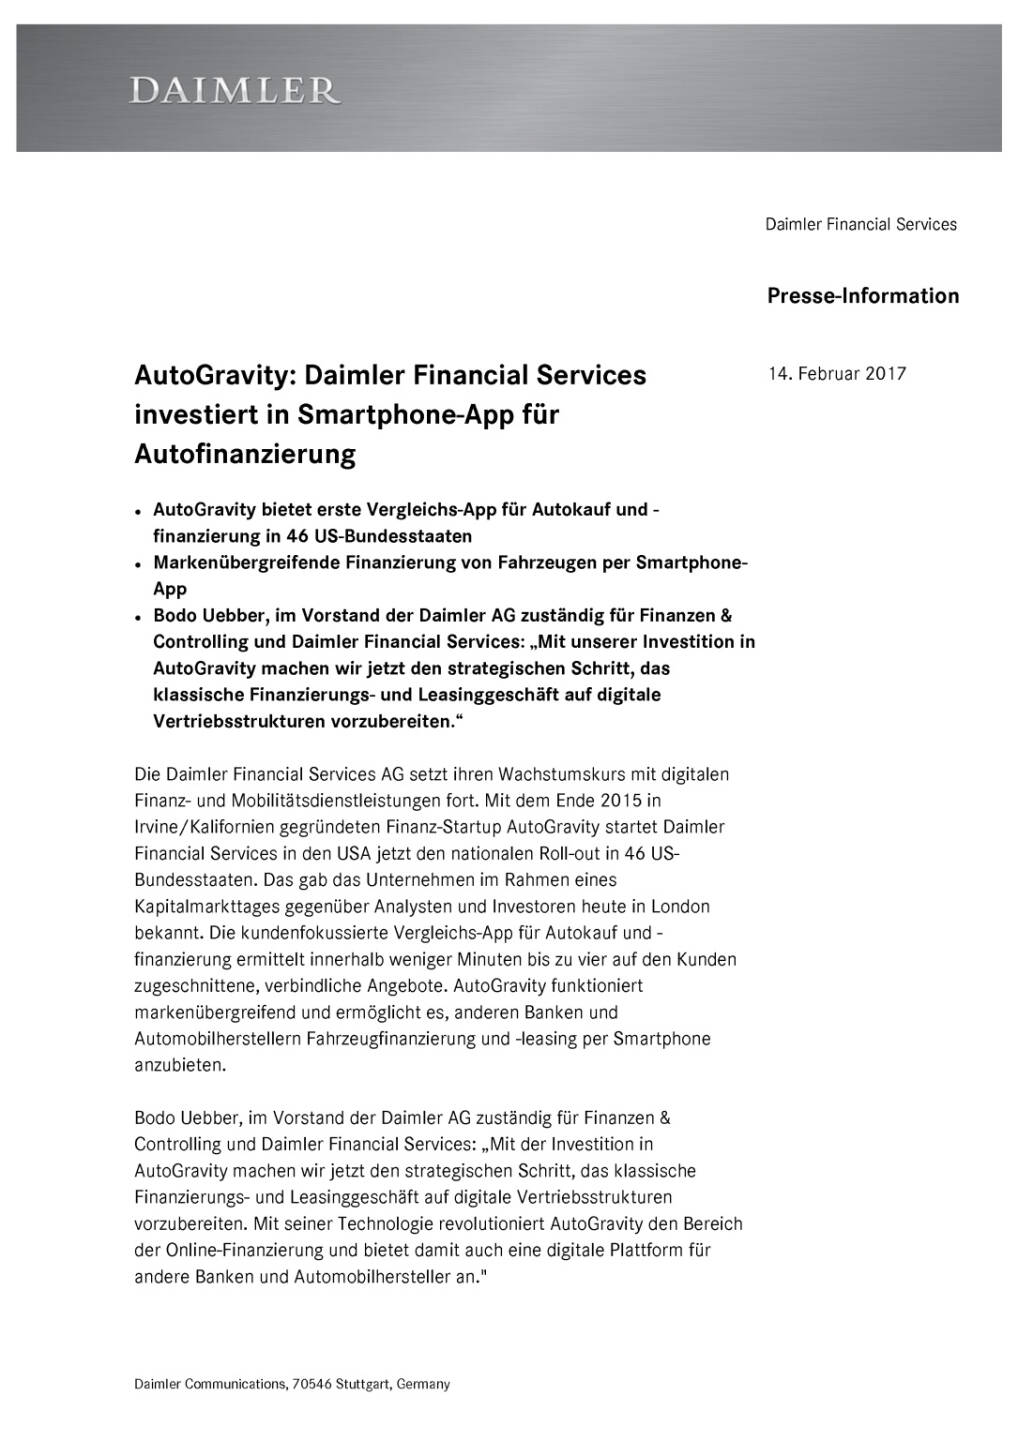 Daimler Financial Services investiert in Smartphone-App für Autofinanzierung, Seite 1/4, komplettes Dokument unter http://boerse-social.com/static/uploads/file_2109_daimler_financial_services_investiert_in_smartphone-app_fur_autofinanzierung.pdf